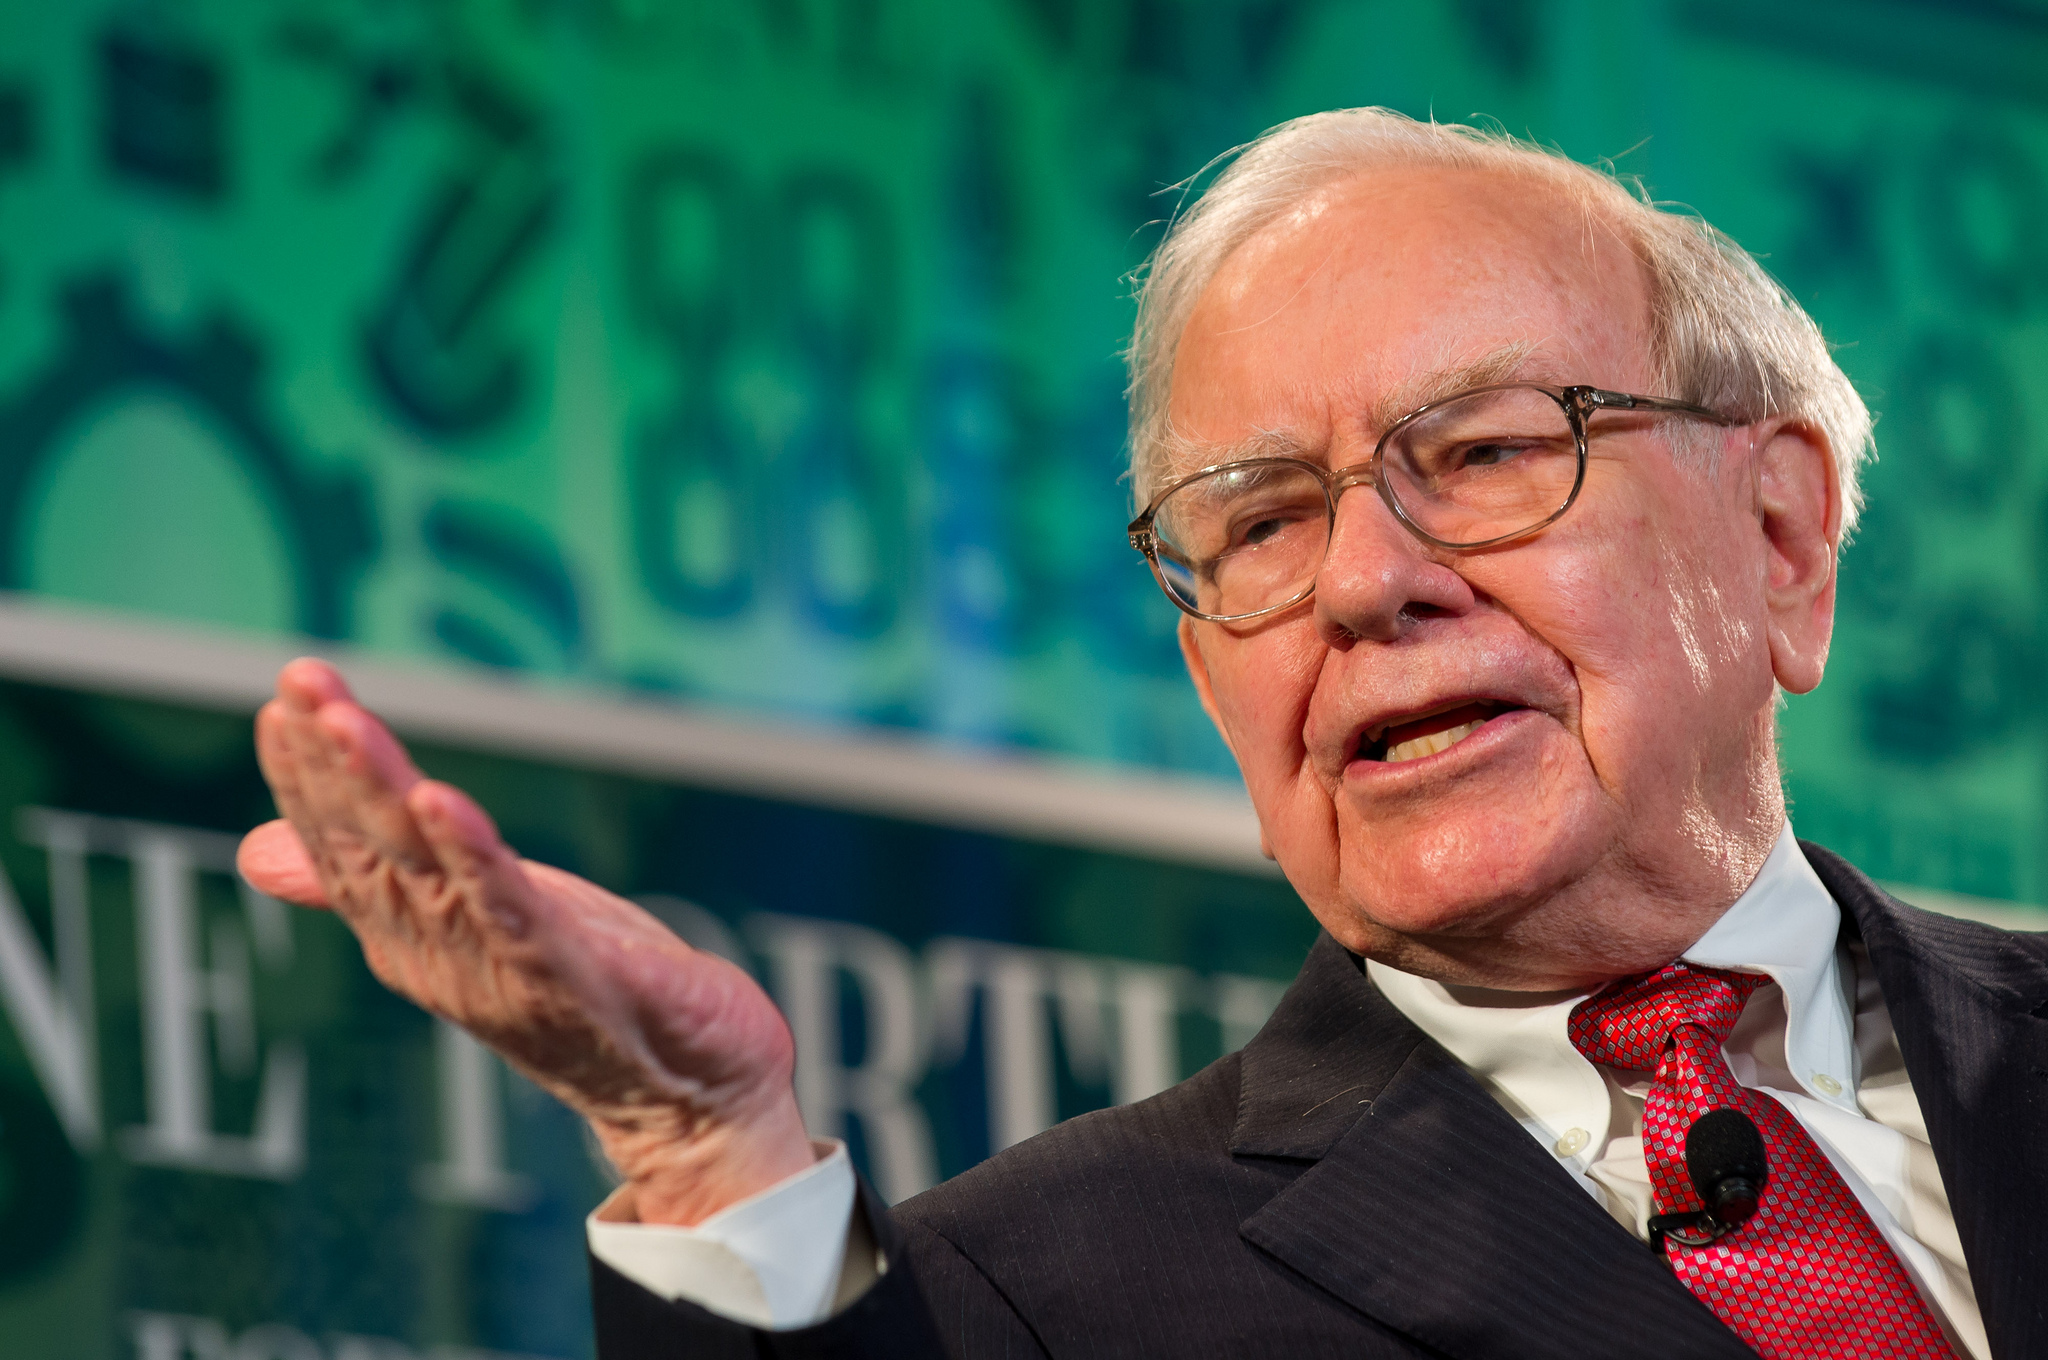 Warren-Buffett-loses-2-billion